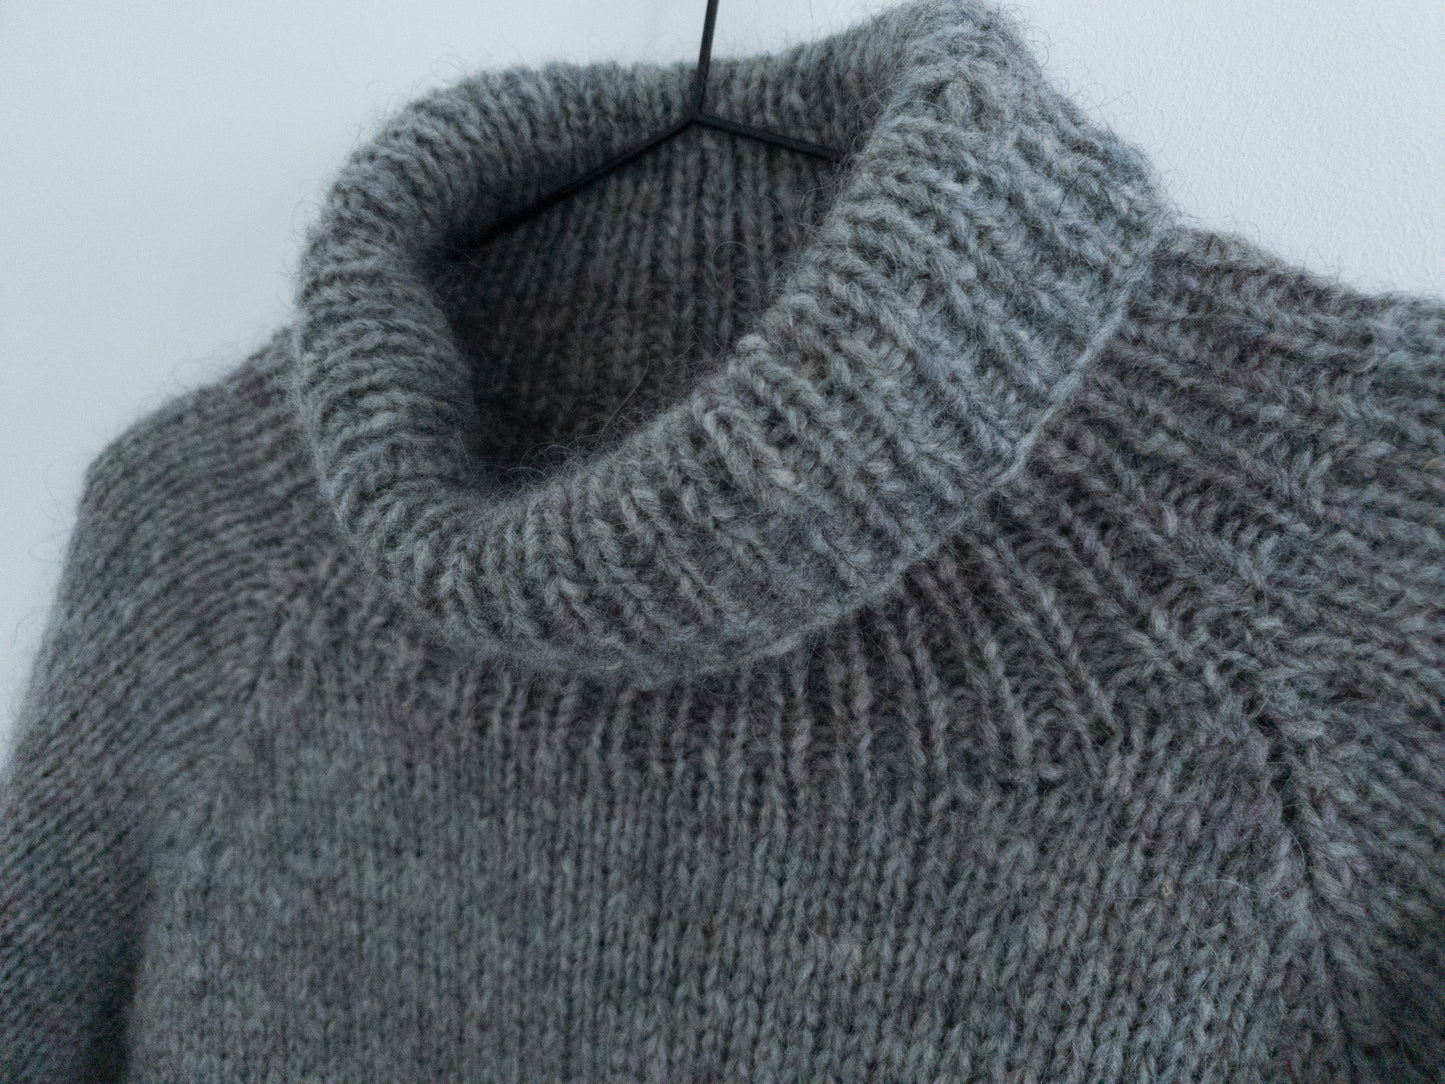 Lo·ki (Loki) Raglan Sweater - Knitting Pattern